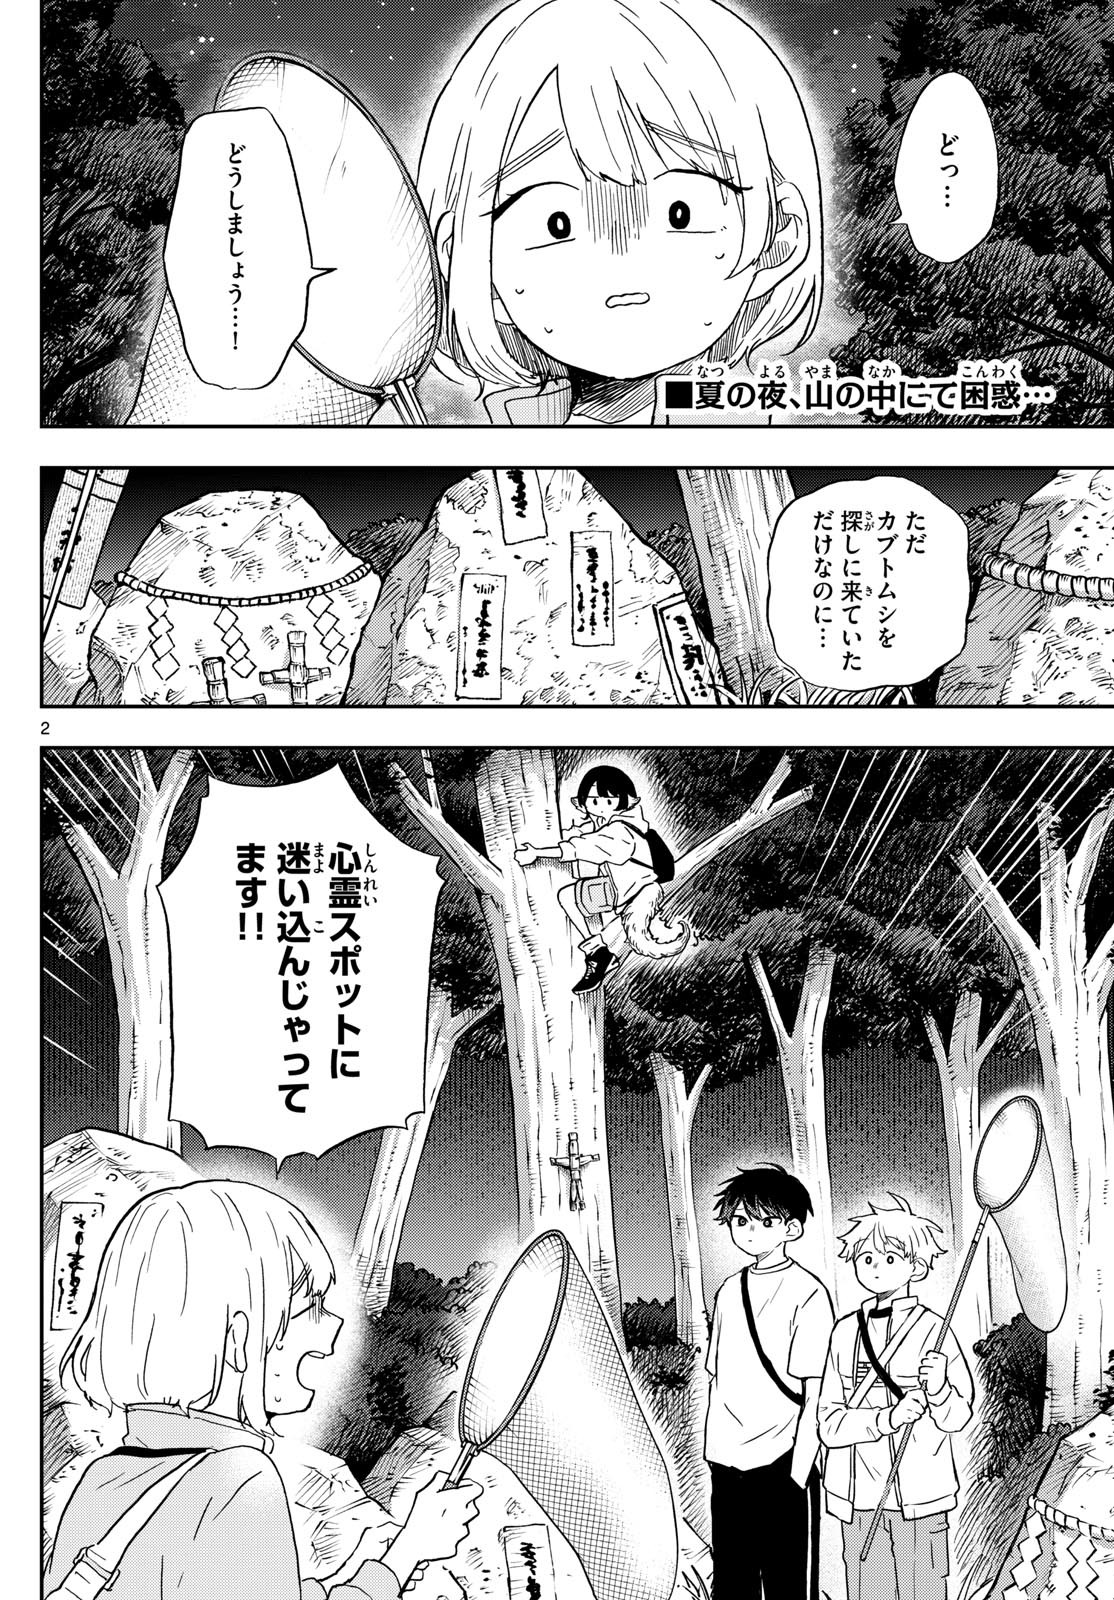 Omori Tsumiki to Kinichijou. - Chapter 23 - Page 2